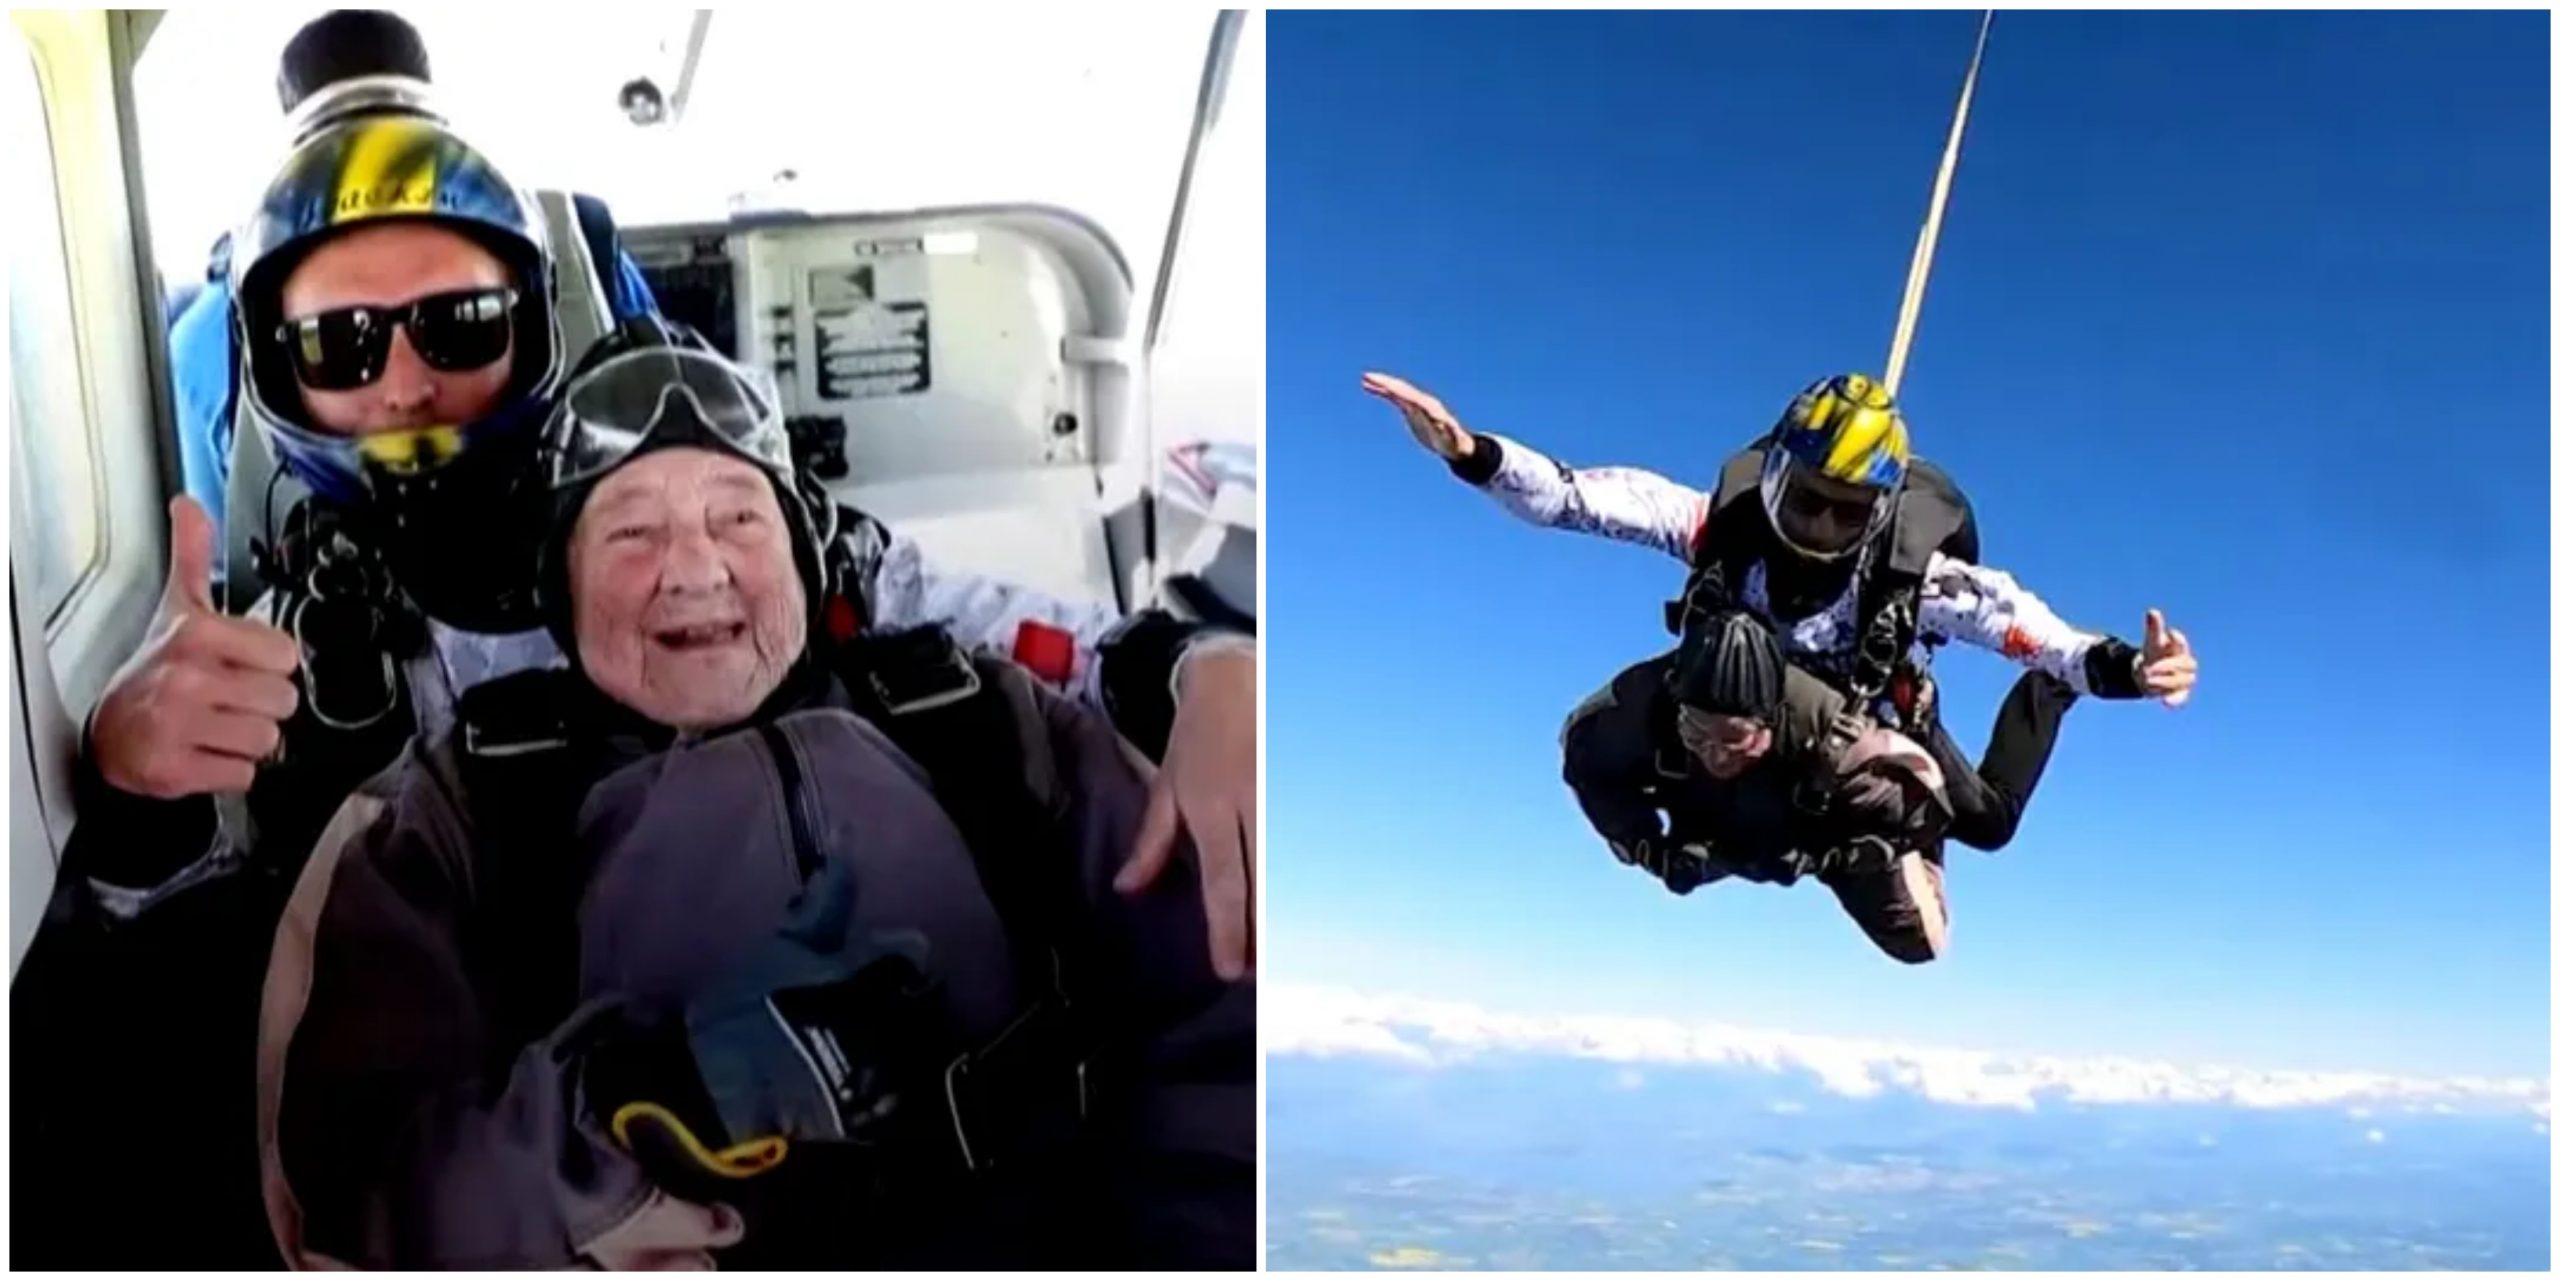 A 103 éves nagymama kiugrott egy repülőből, hogy ezzel megvalósítsa élete legnagyobb álmát – gratulálunk neki